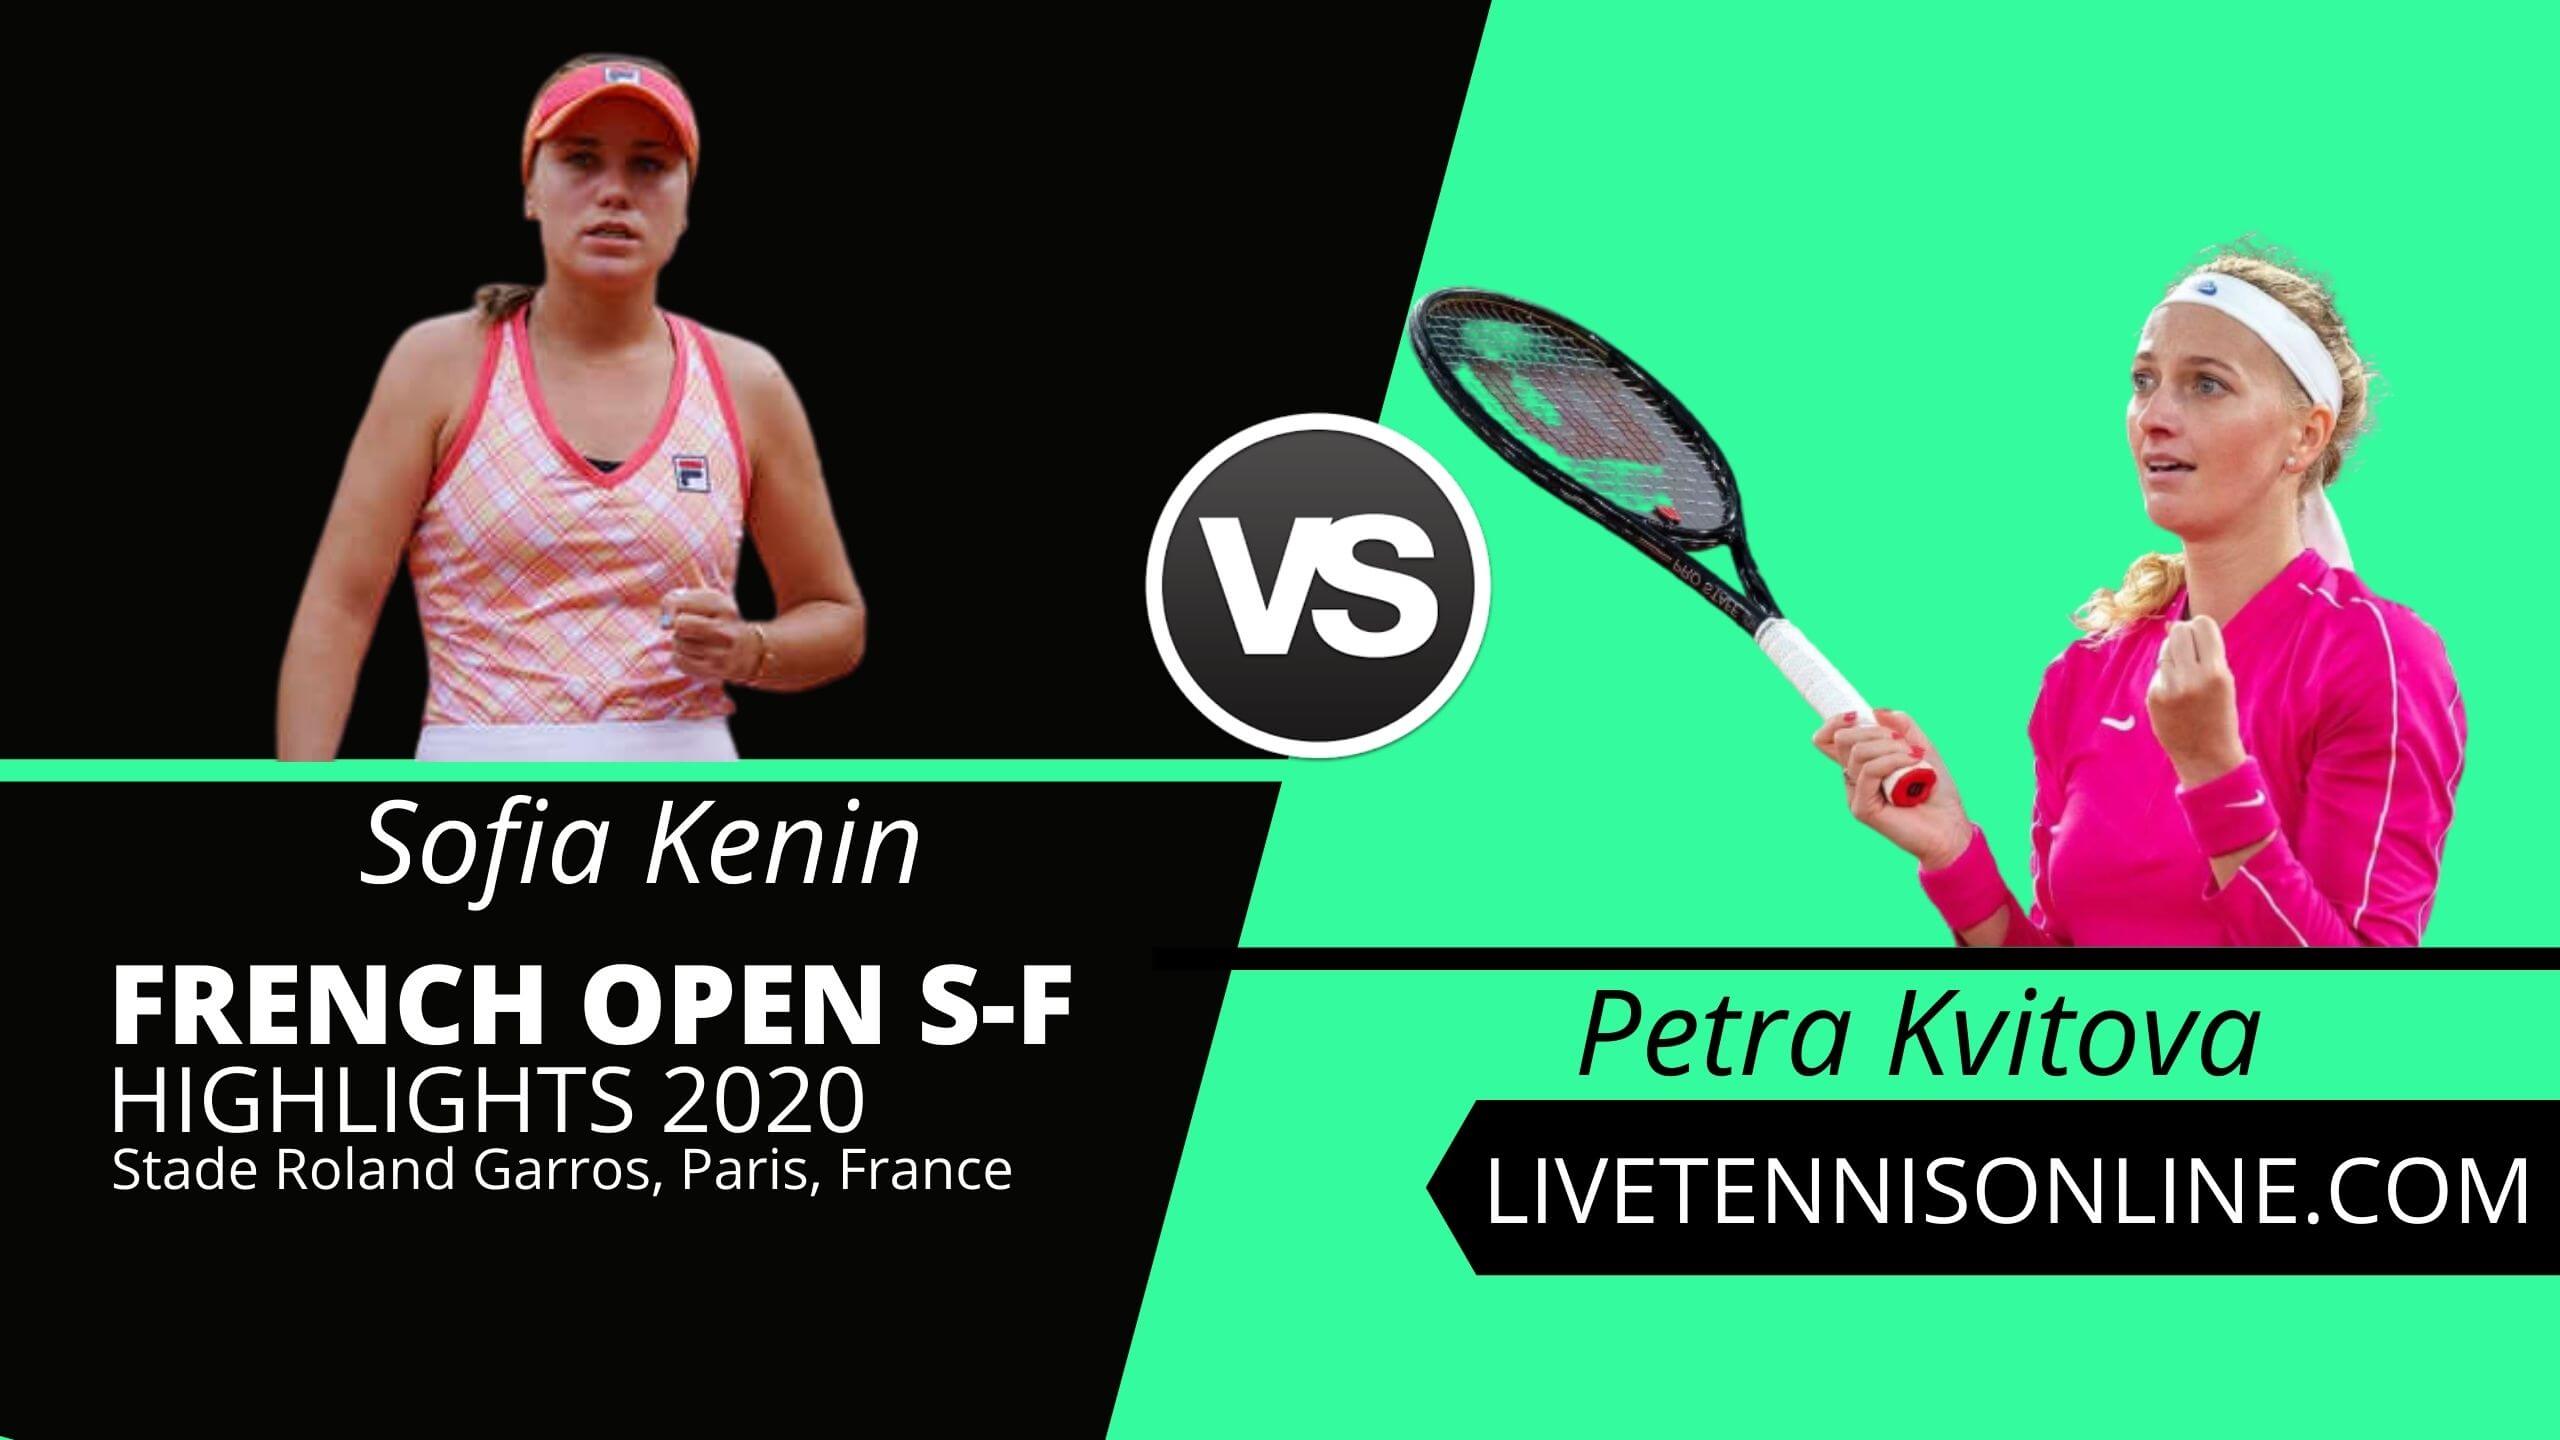 Sofia Kenin vs Petra Kvitova Semi Fina Highlights 2020